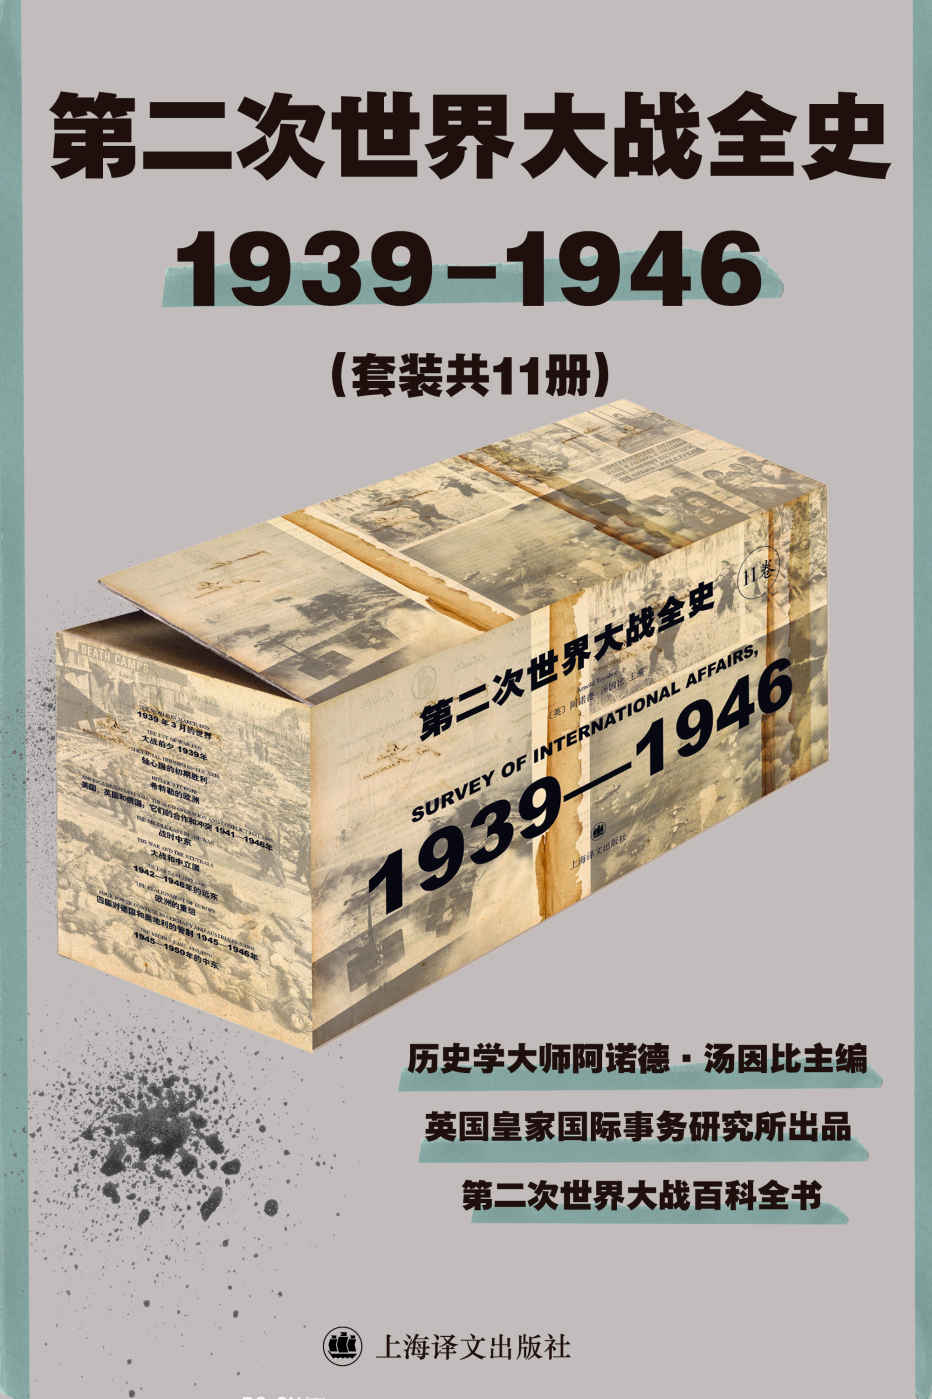 《第二次世界大战全史1939-1946(套装共11册)》-azw3,mobi,epub,pdf,txt,kindle电子书免费下载